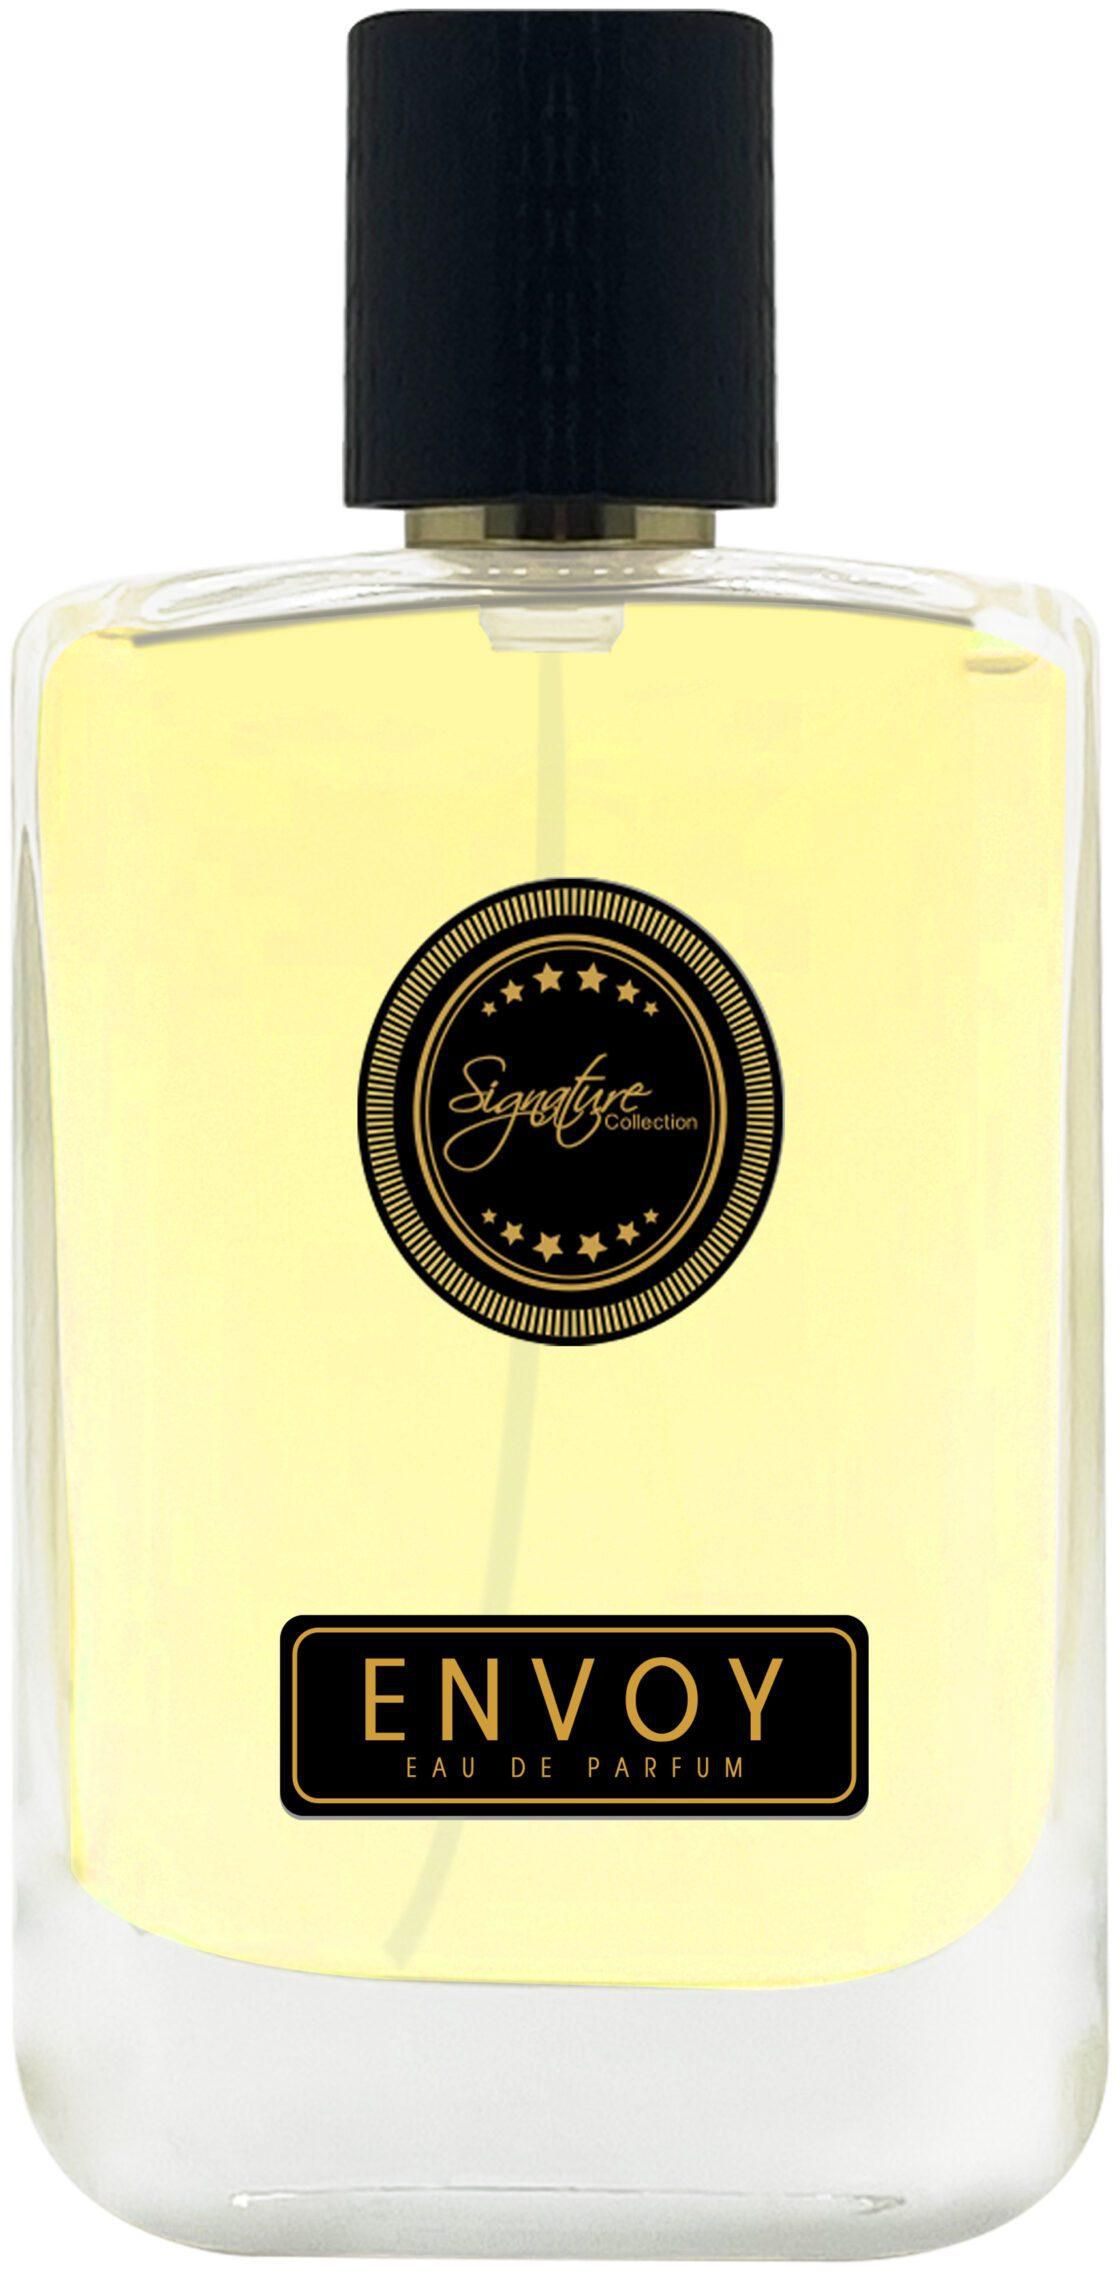 Signature Collection Envoy Eau De Parfum 50 Ml